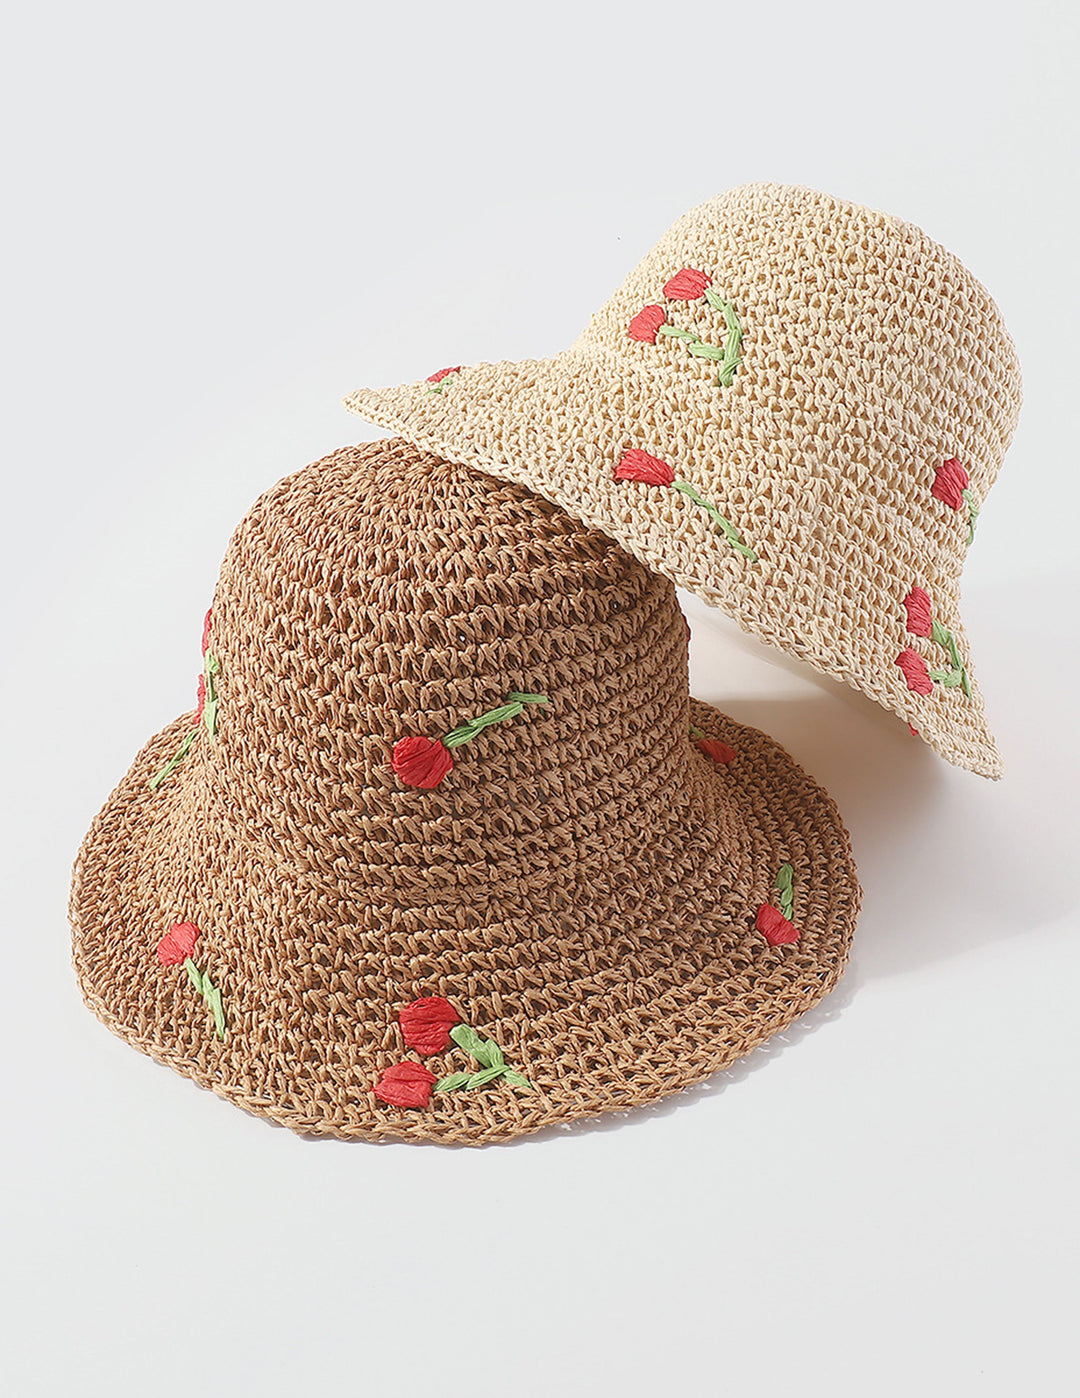 Πλεκτό καπέλο με κουβά λουλουδιών